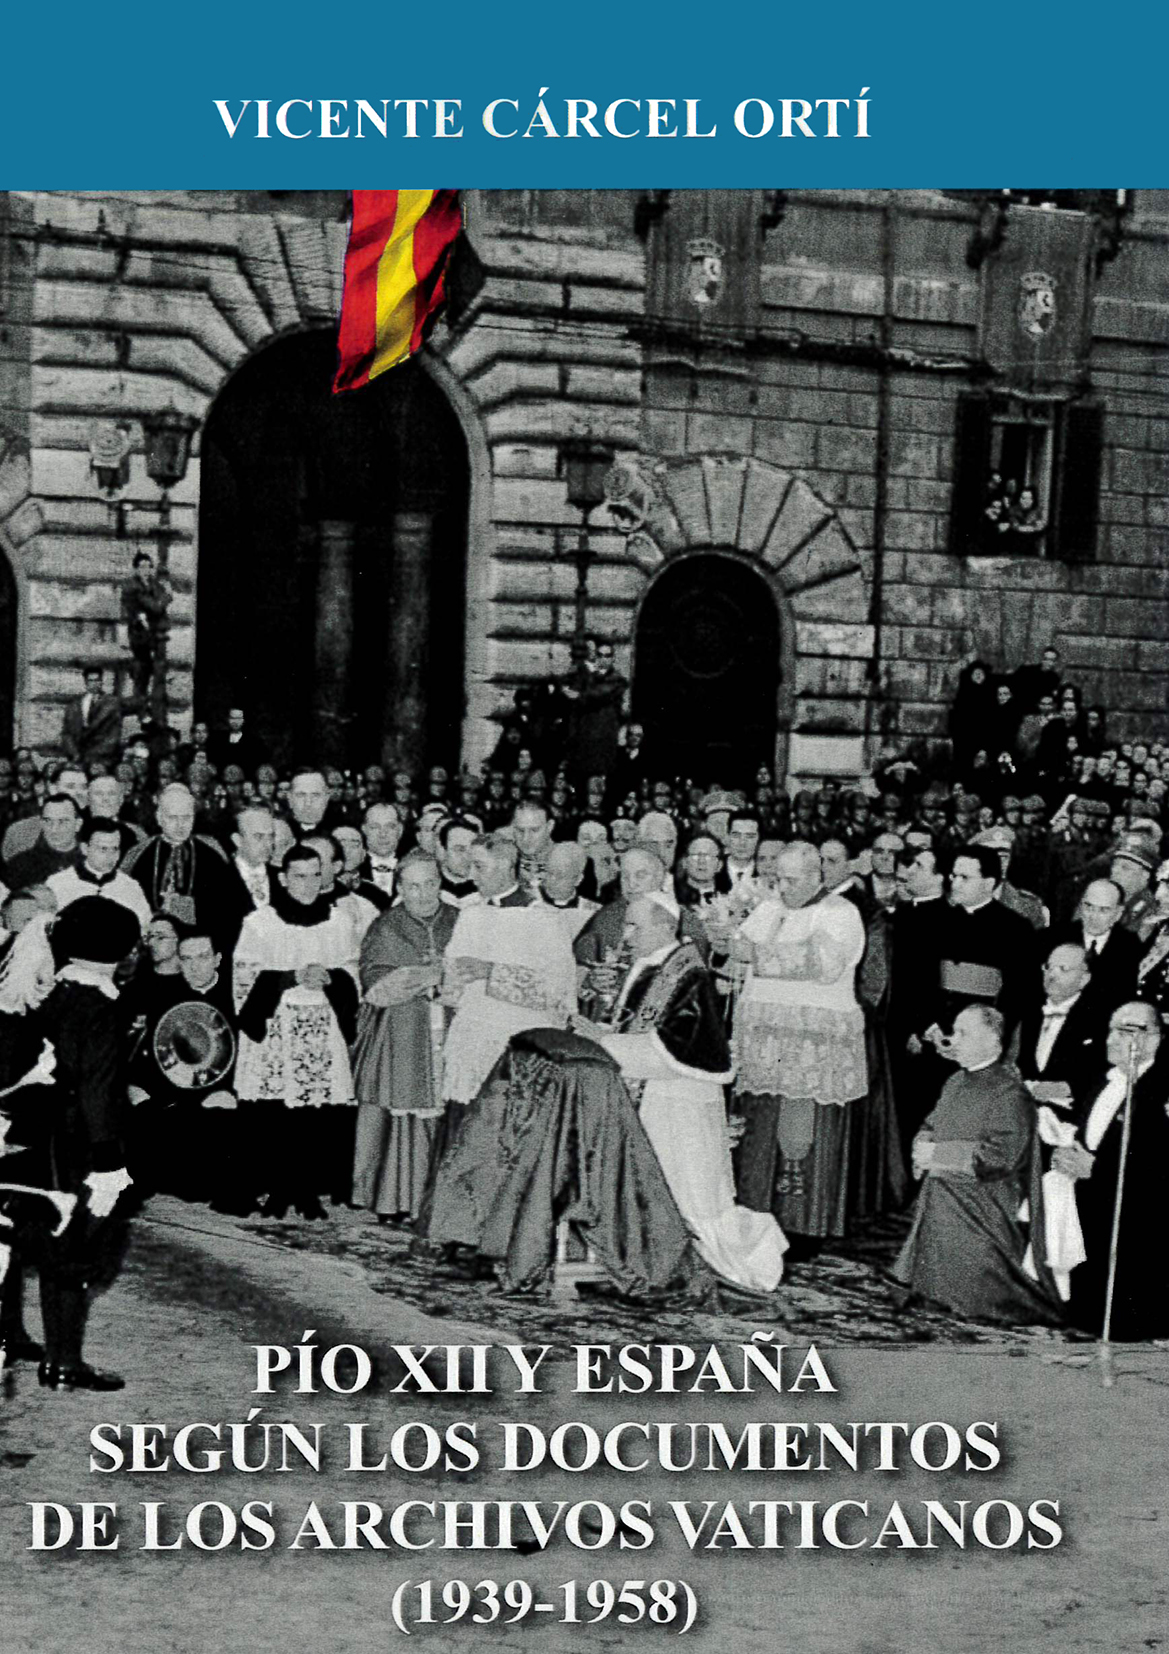 Pío XII y España según los documentos de los archivos vaticanos (1939-1958)